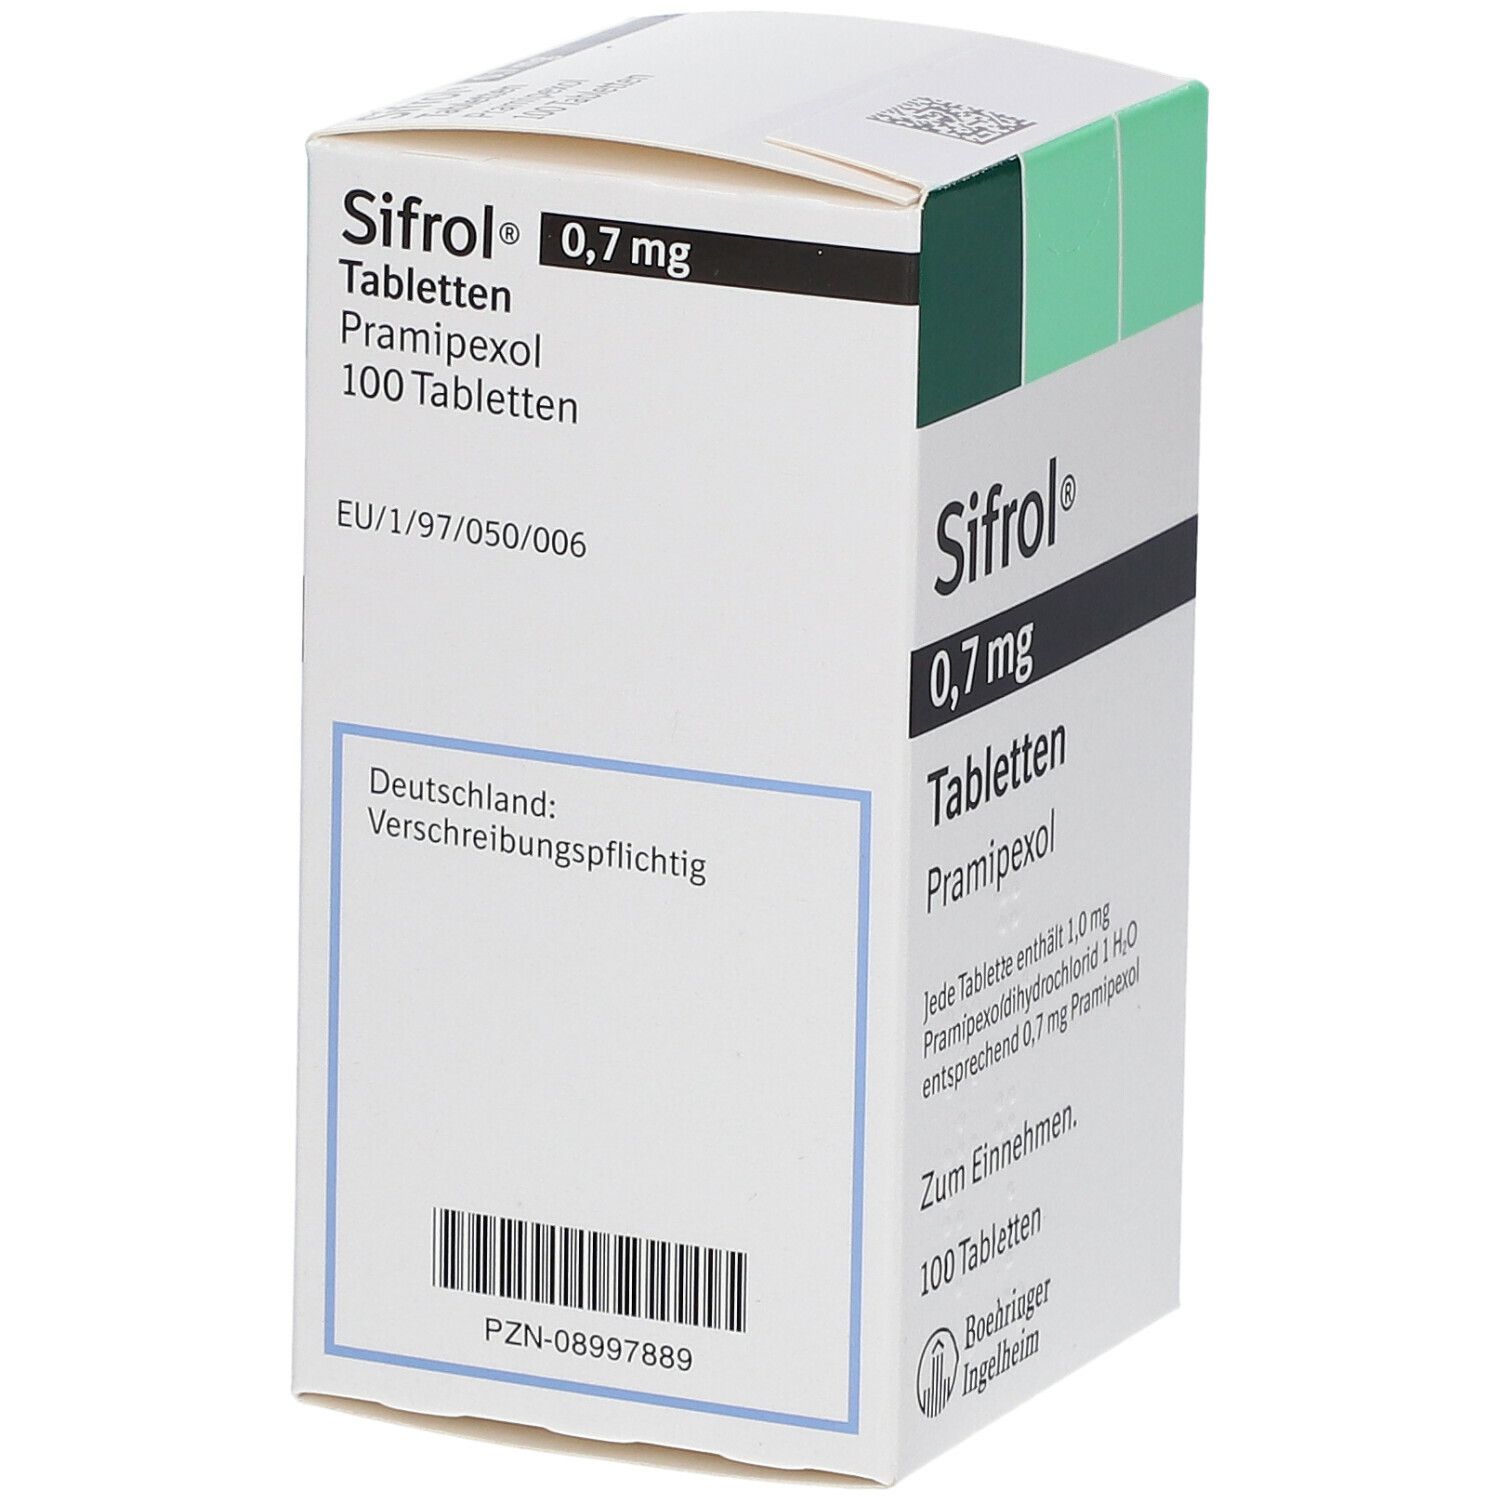 Sifrol® 0,7 mg